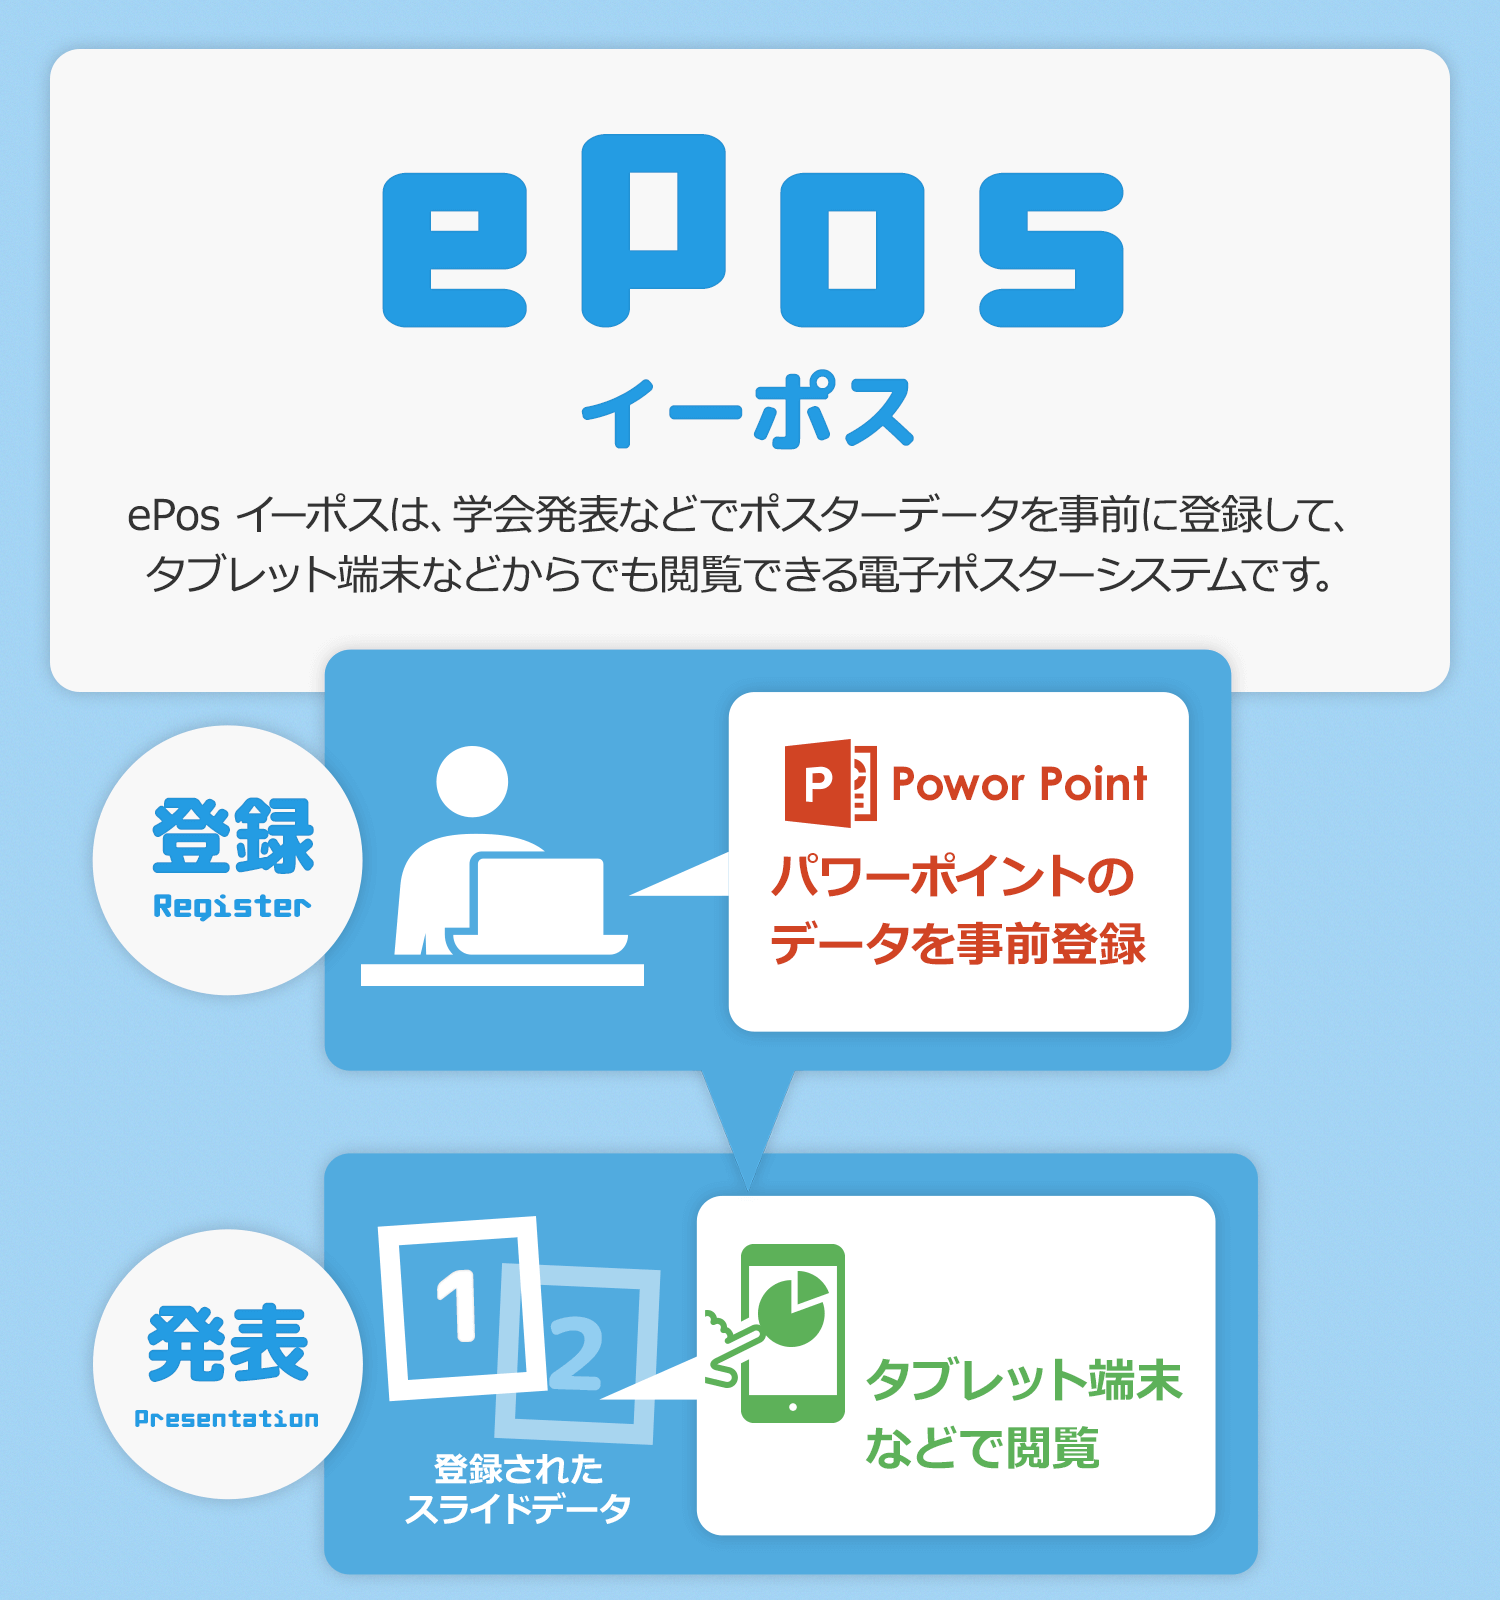 ePos イーポスは、学会発表などでポスターデータを事前に登録して、タブレット端末などからでも閲覧できる電子ポスターシステムです。